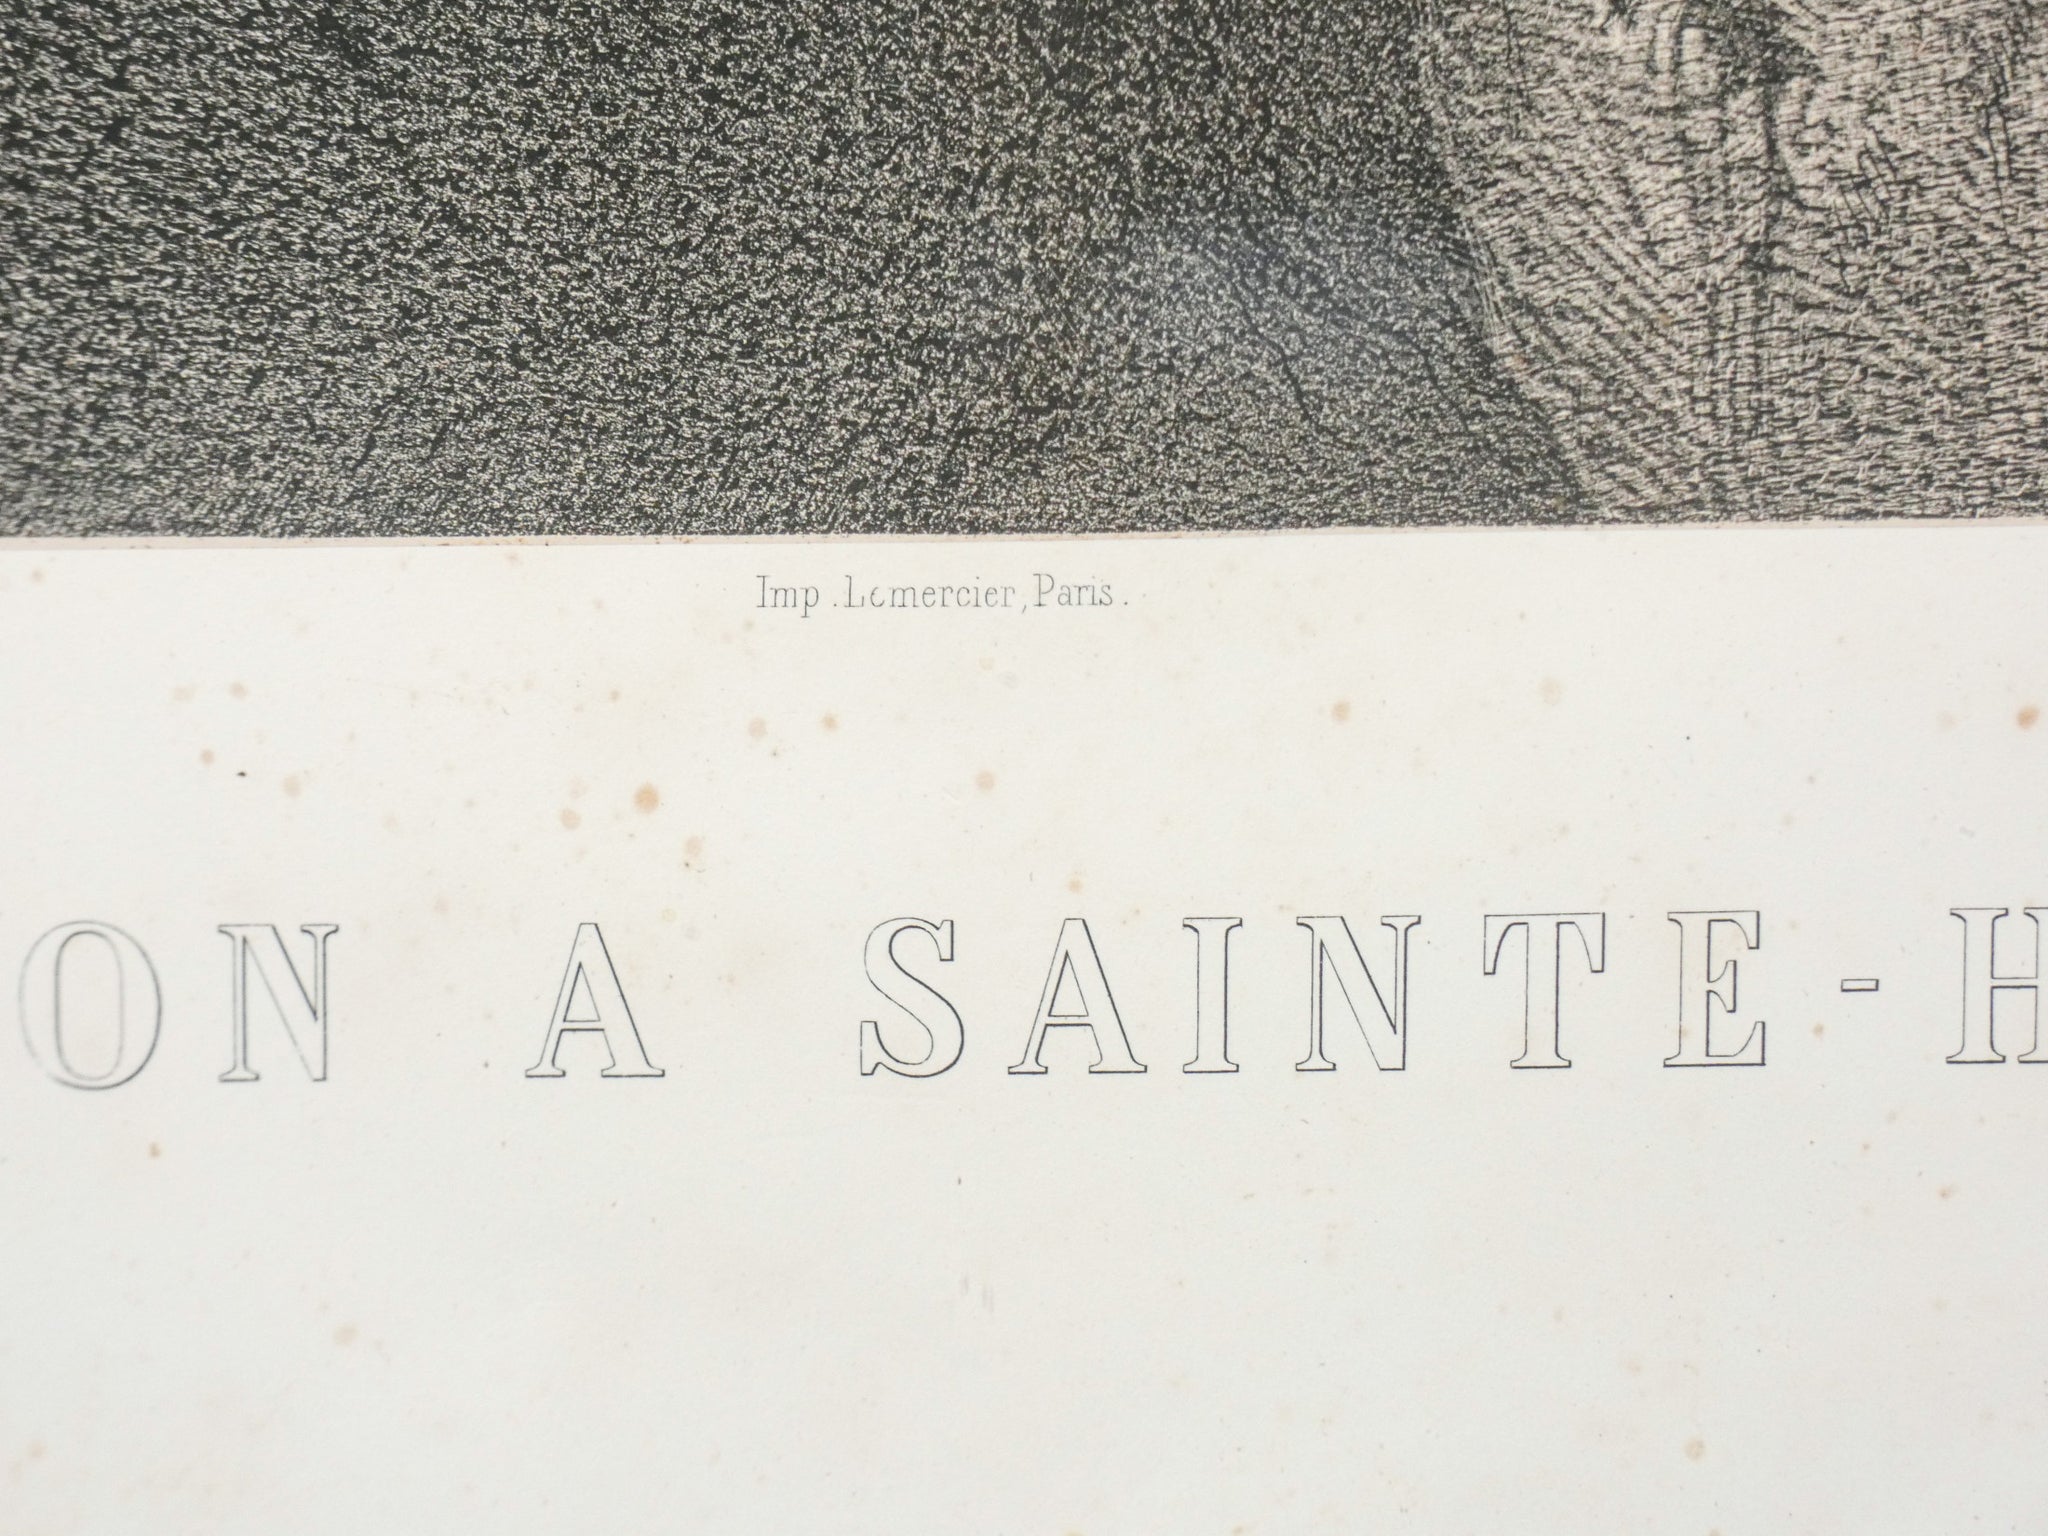 litografia fuhr lafosse delaroche napoleon a sainte helene napoleone 1859 antica